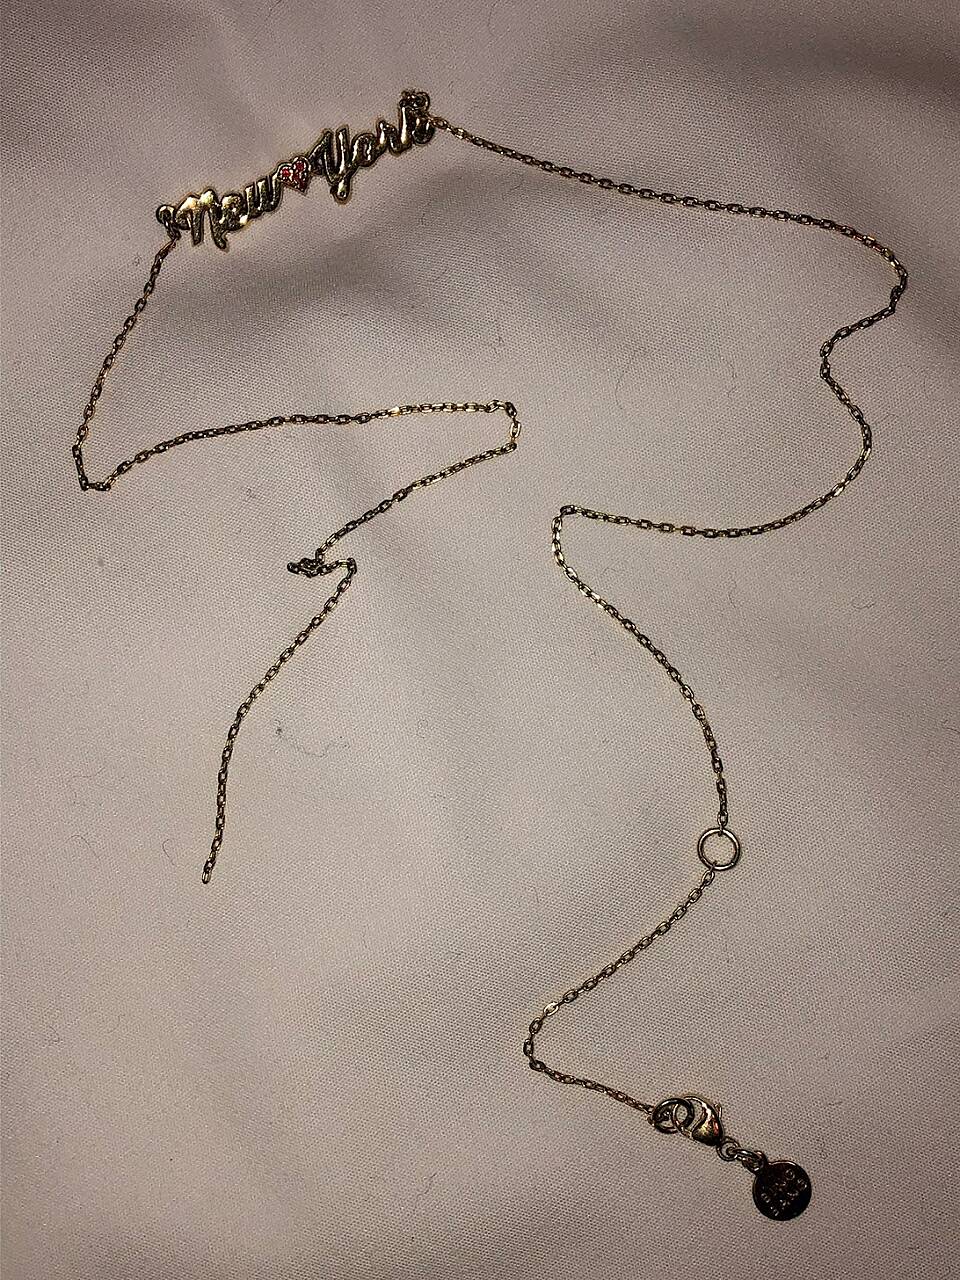 broken NY necklace.jpg